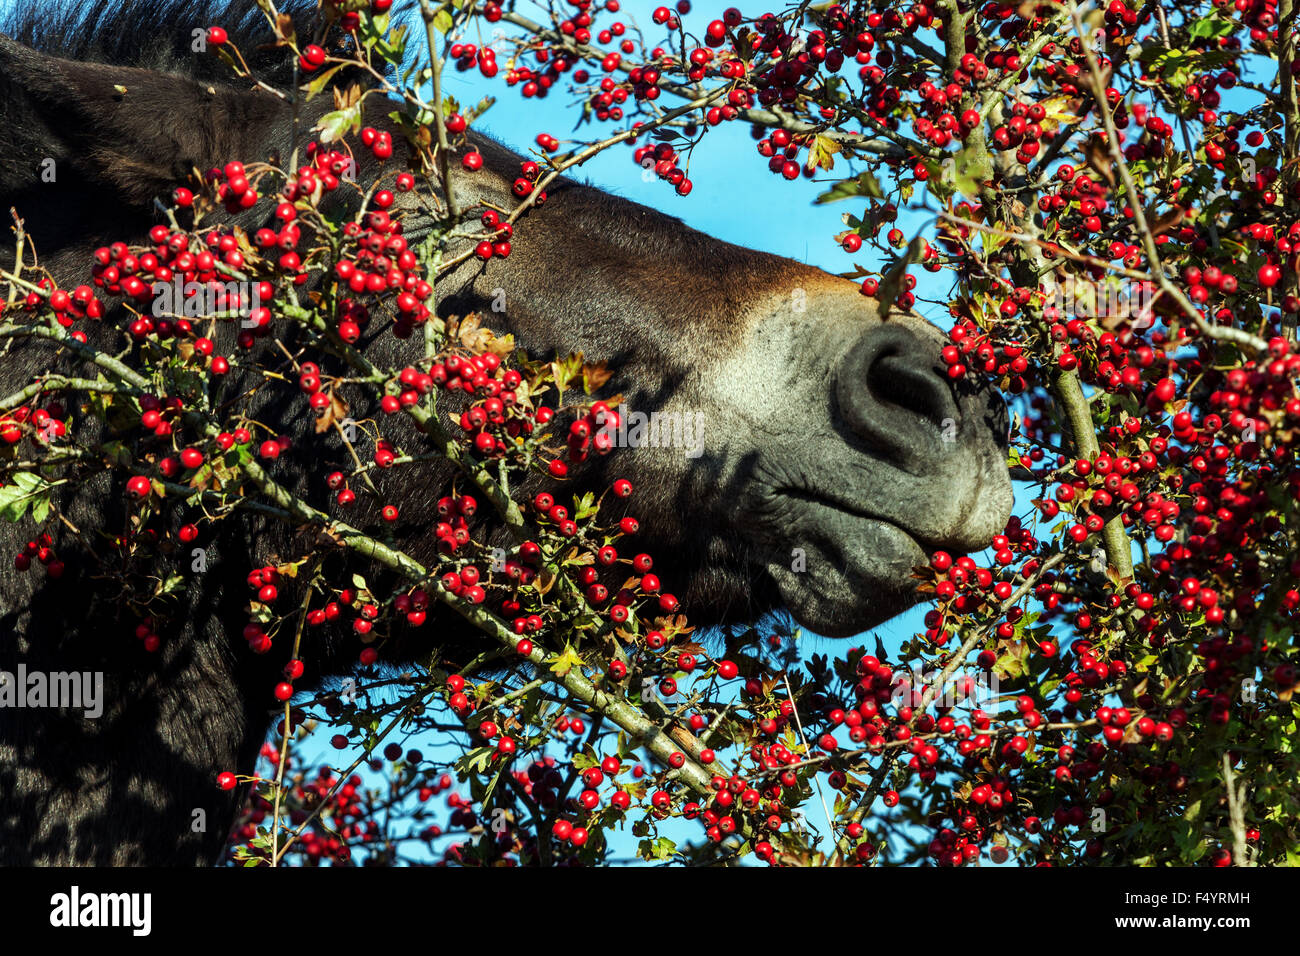 Exmoor pony, Wild Horse eating berries Stock Photo